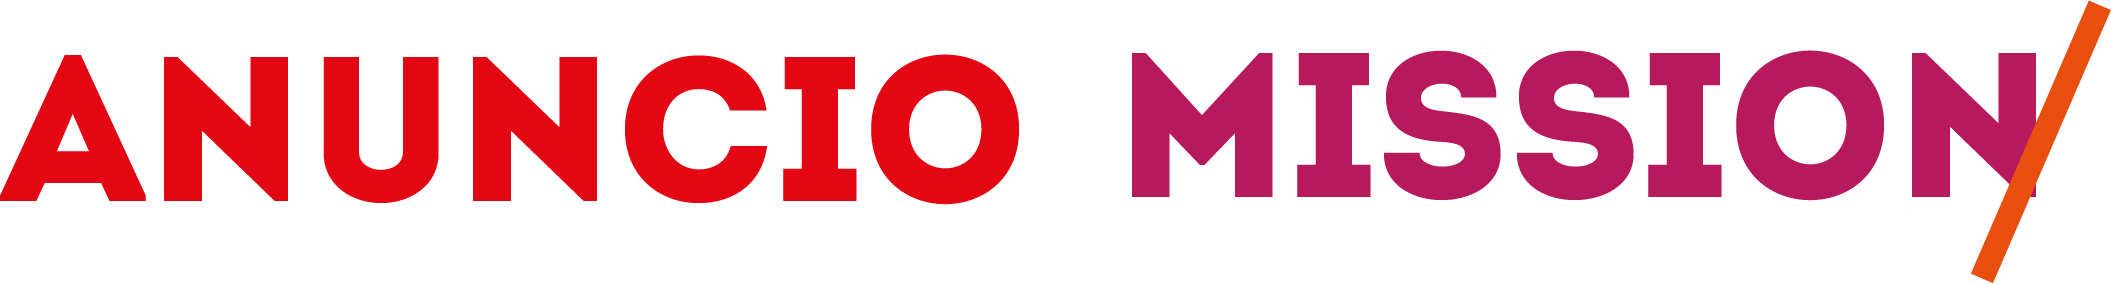 logo Anuncio Mission